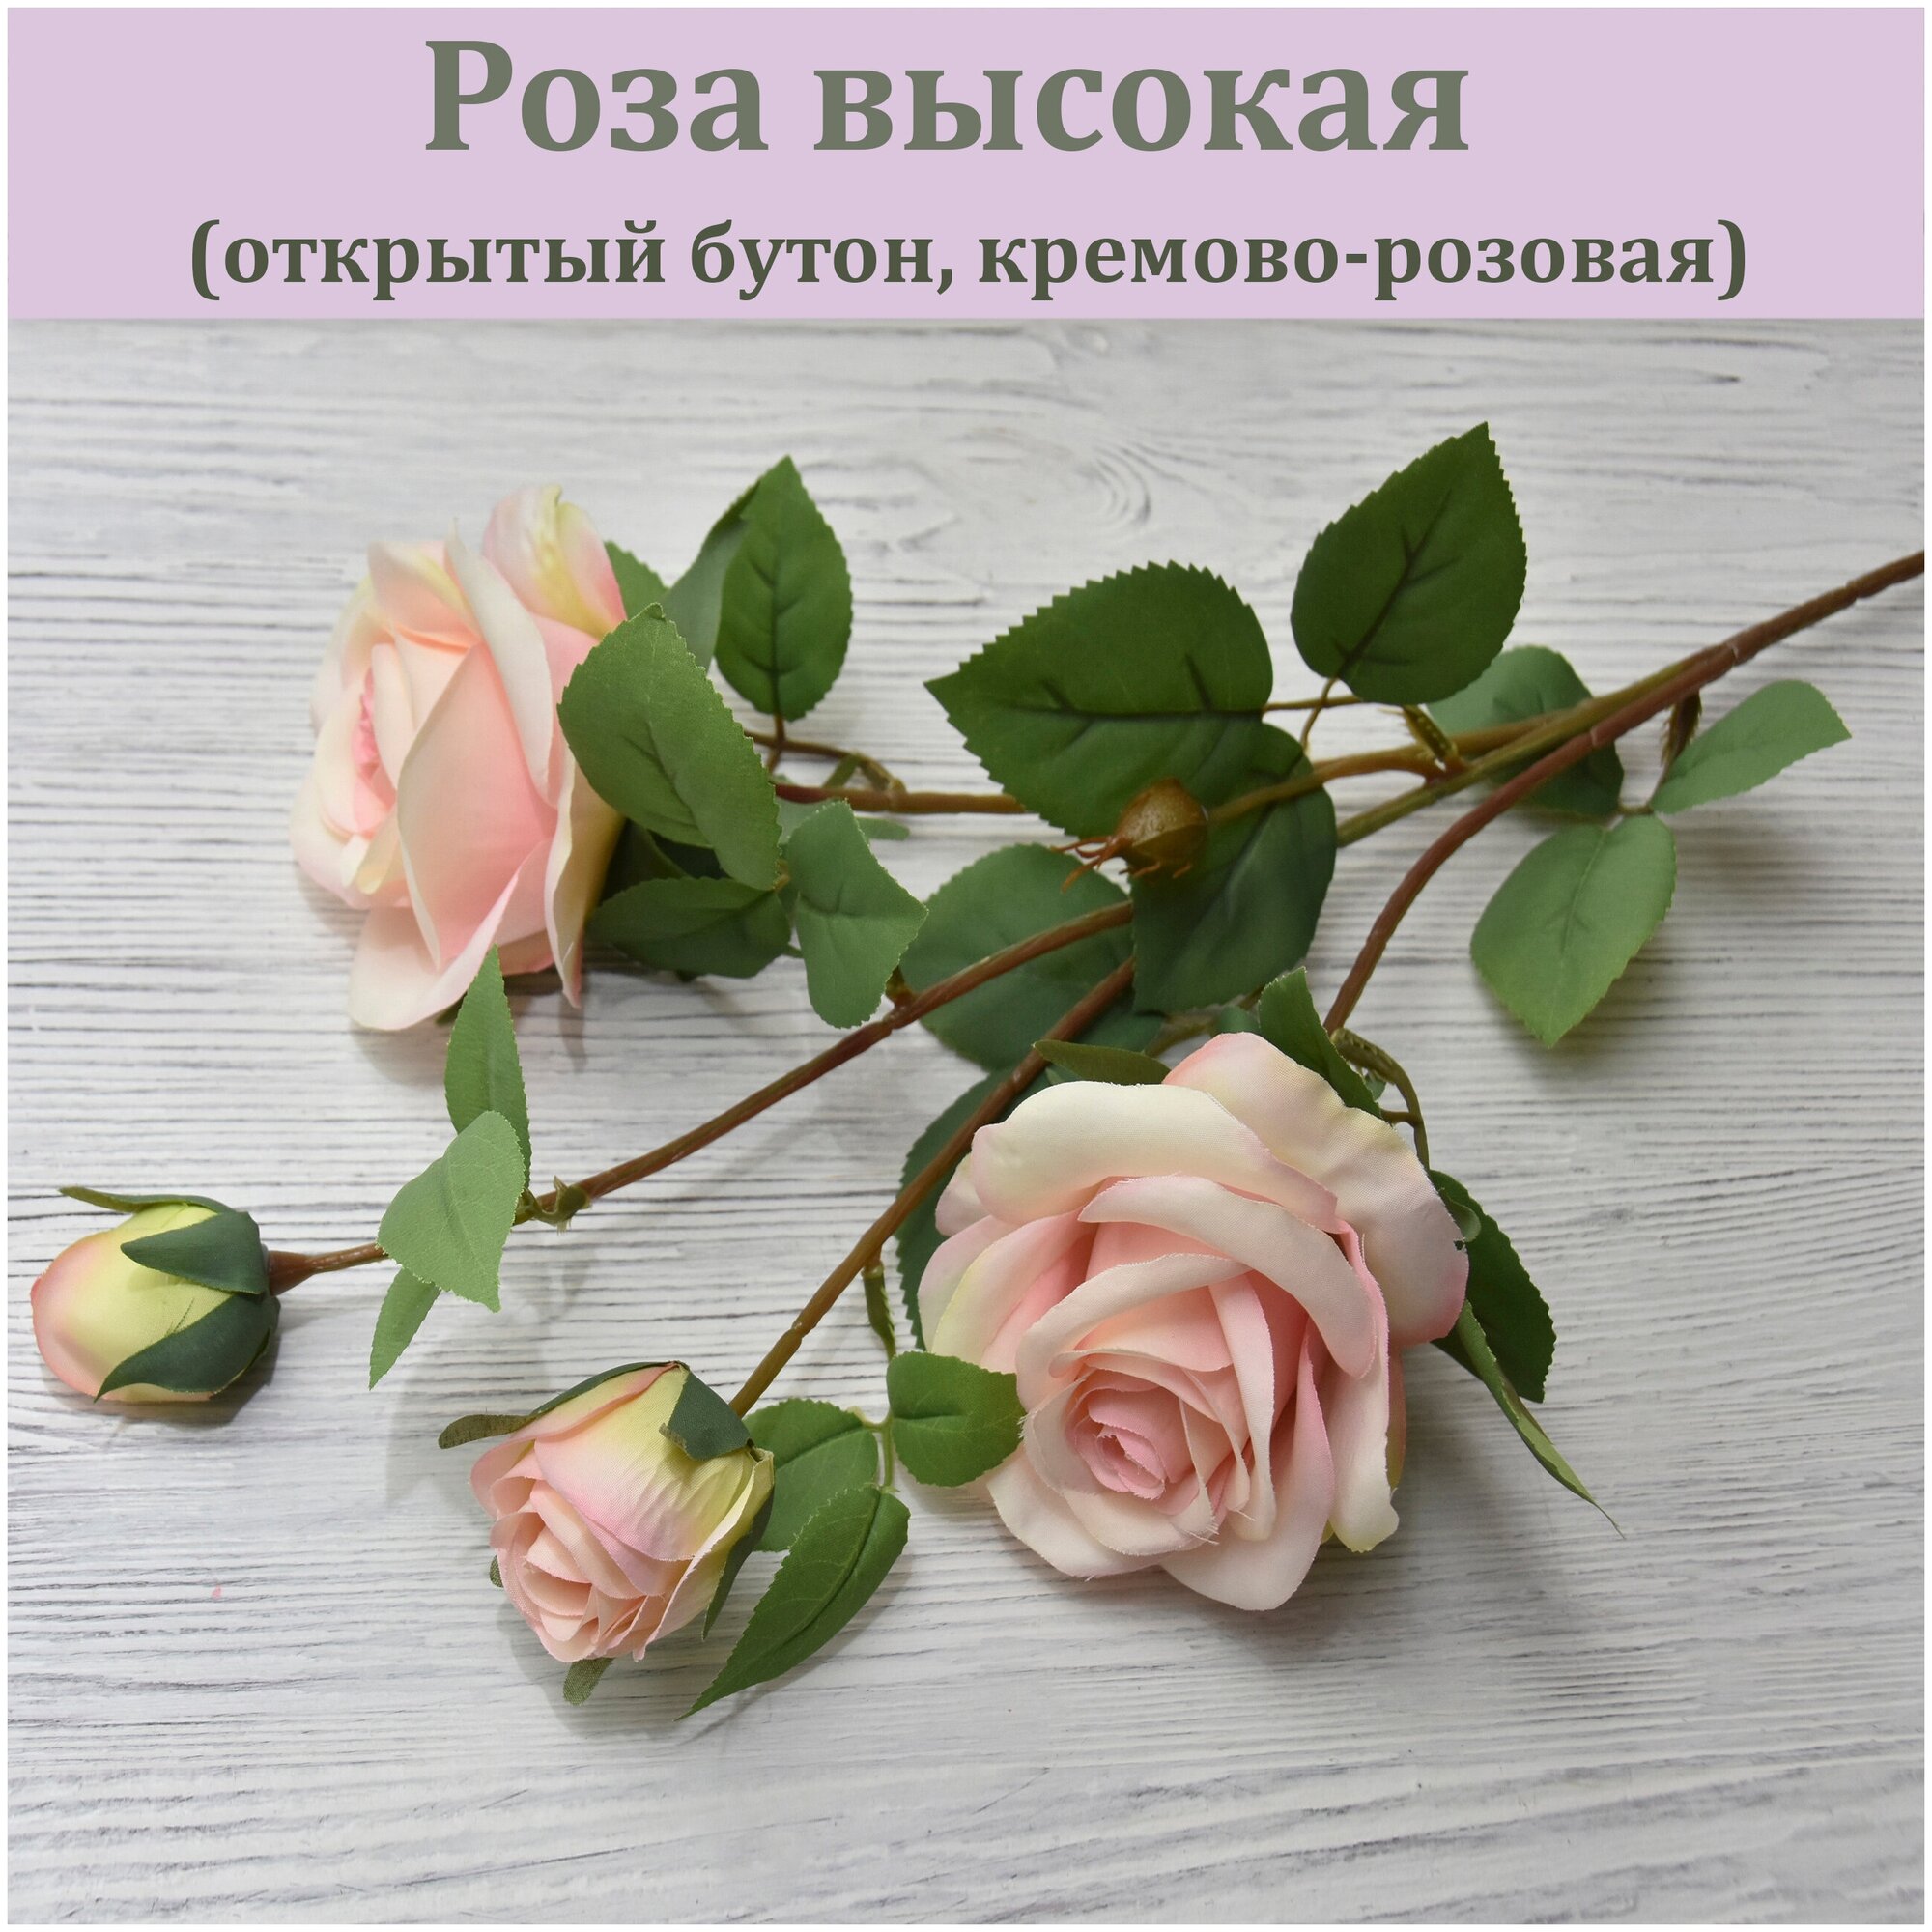 Роза искусственная высокая белая (открытый бутон) / Растение для декора / Реалистичный искусственный цветок